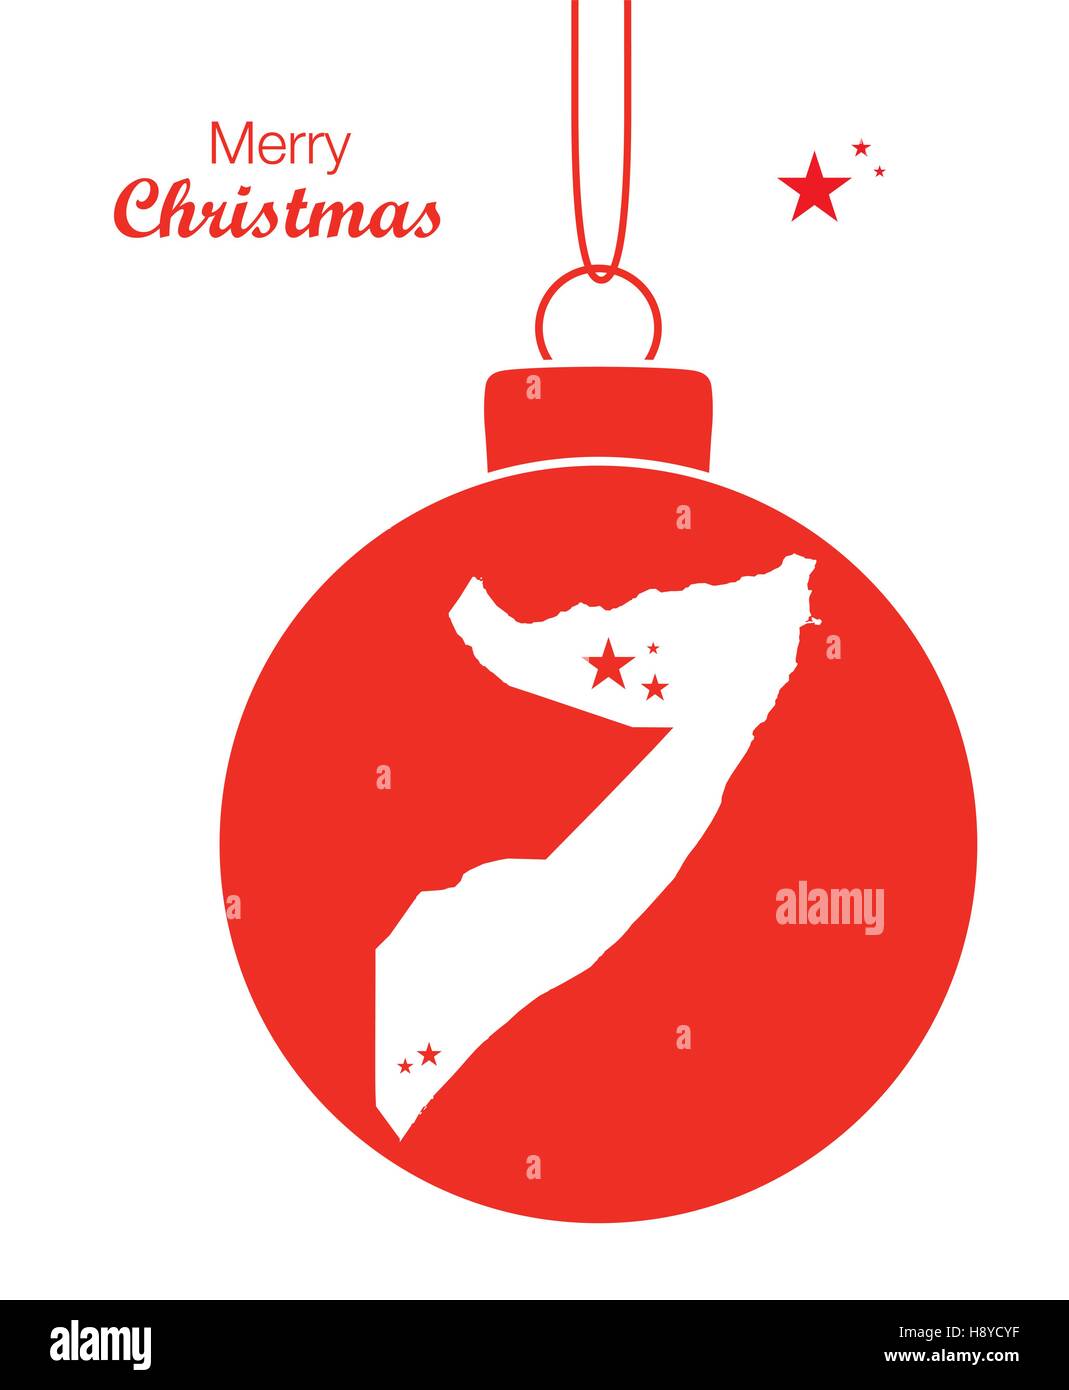 Joyeux Noël thème d'illustration avec la carte de la Somalie Illustration de Vecteur